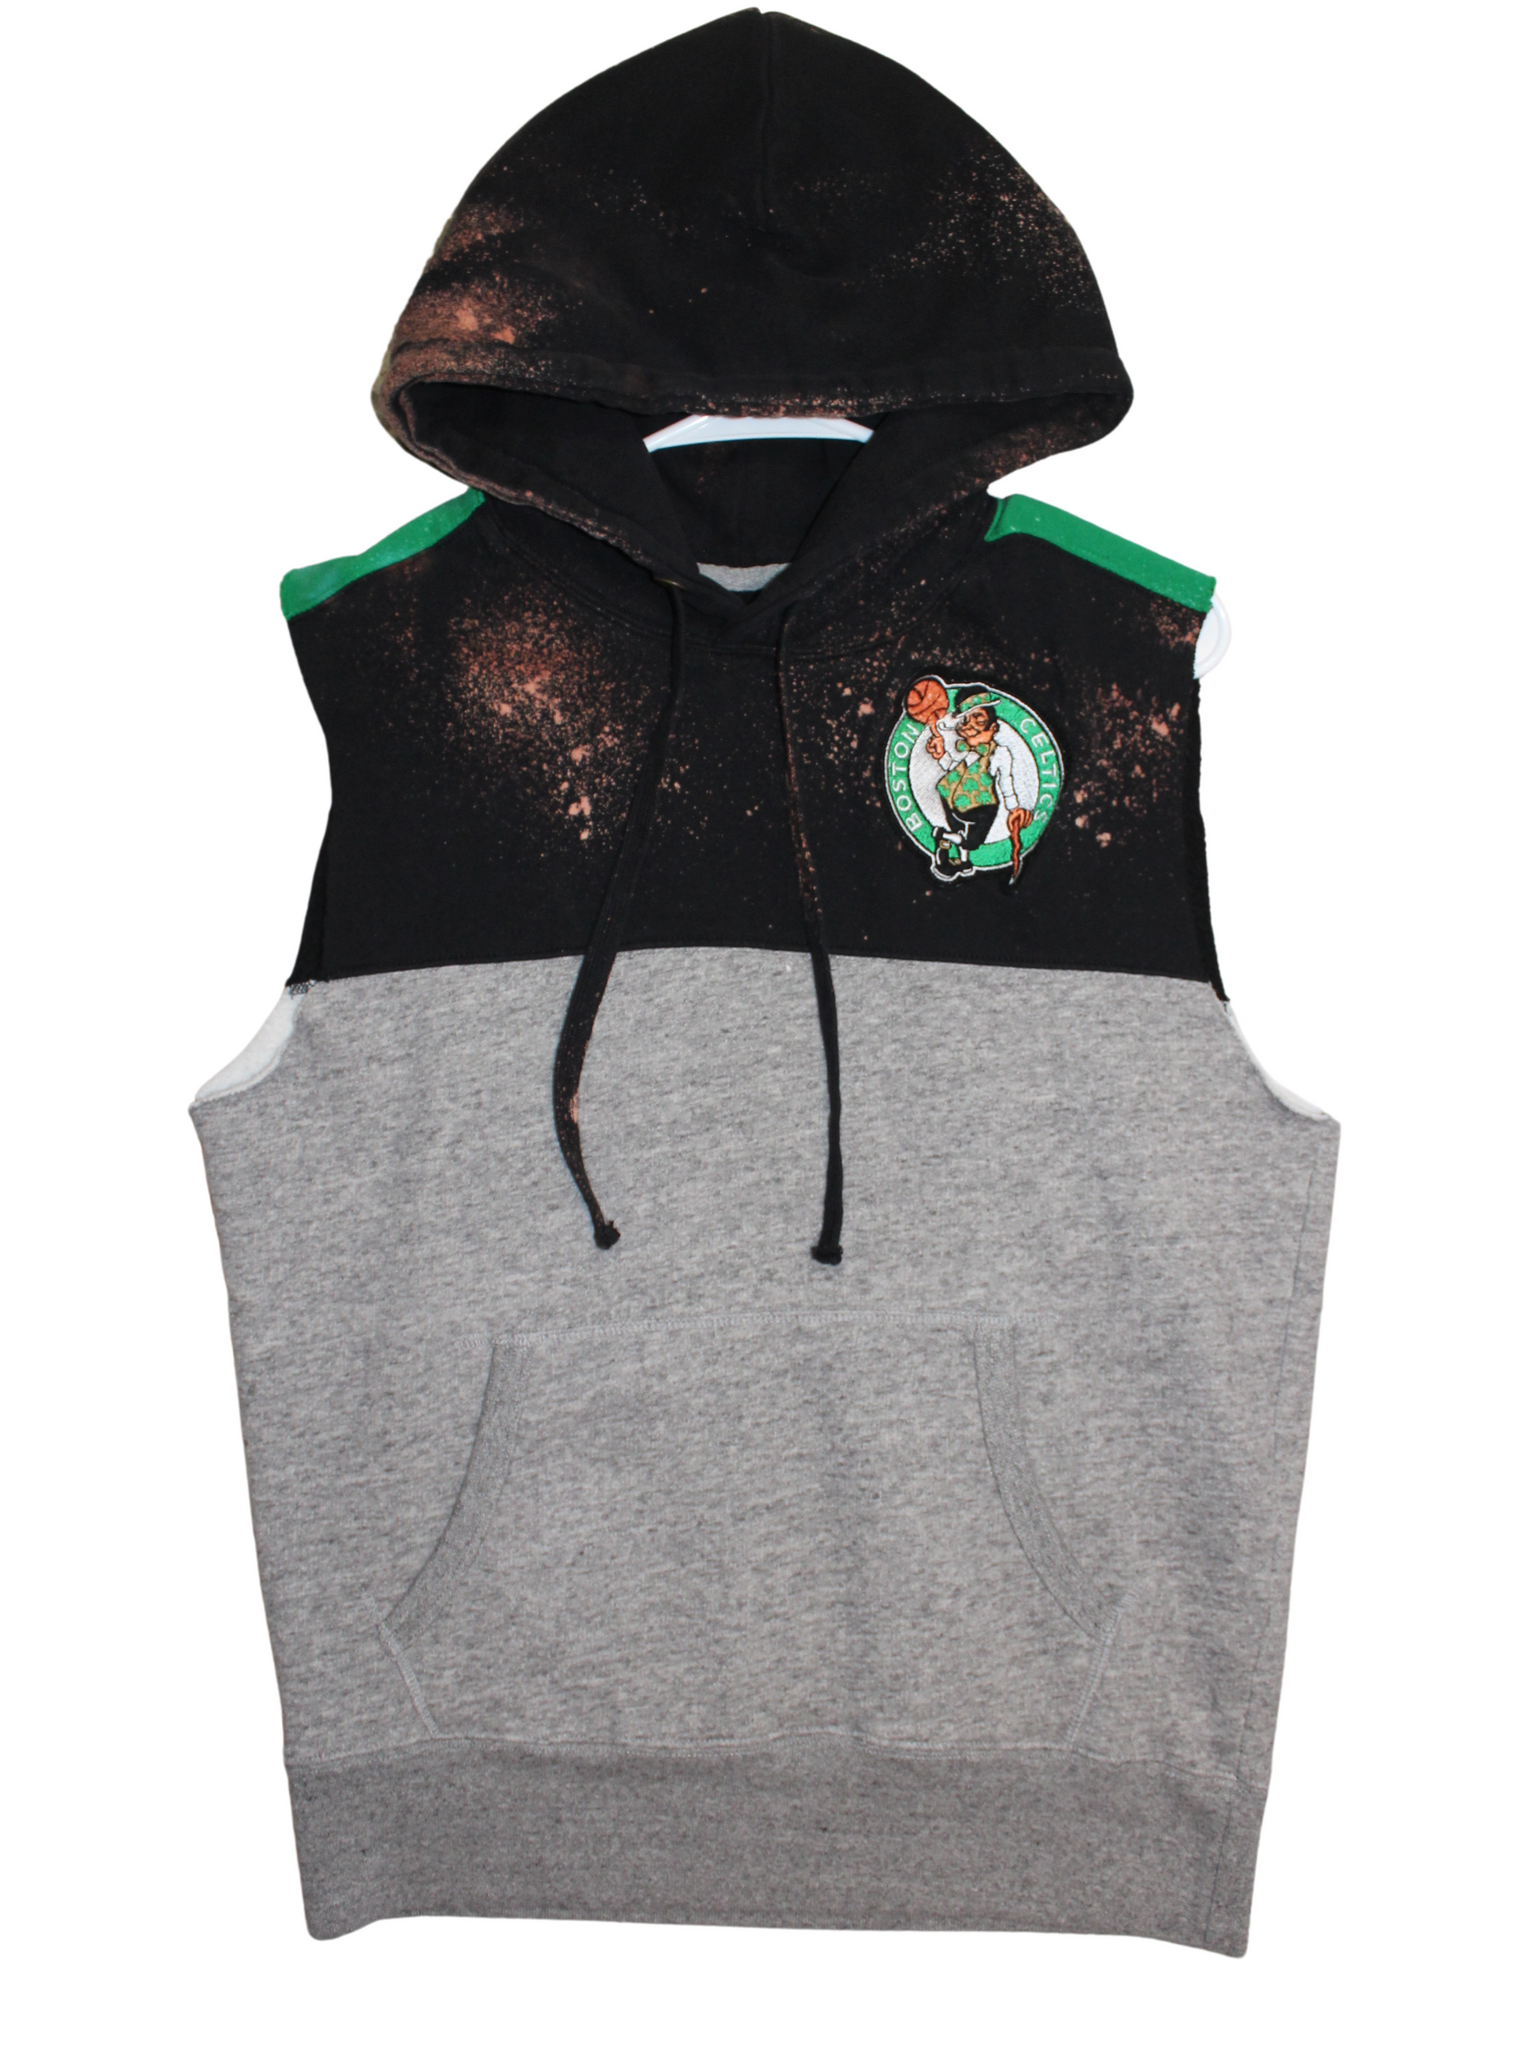 Boston Celtics Hoodie, Celtics Sweatshirts, Celtics Fleece